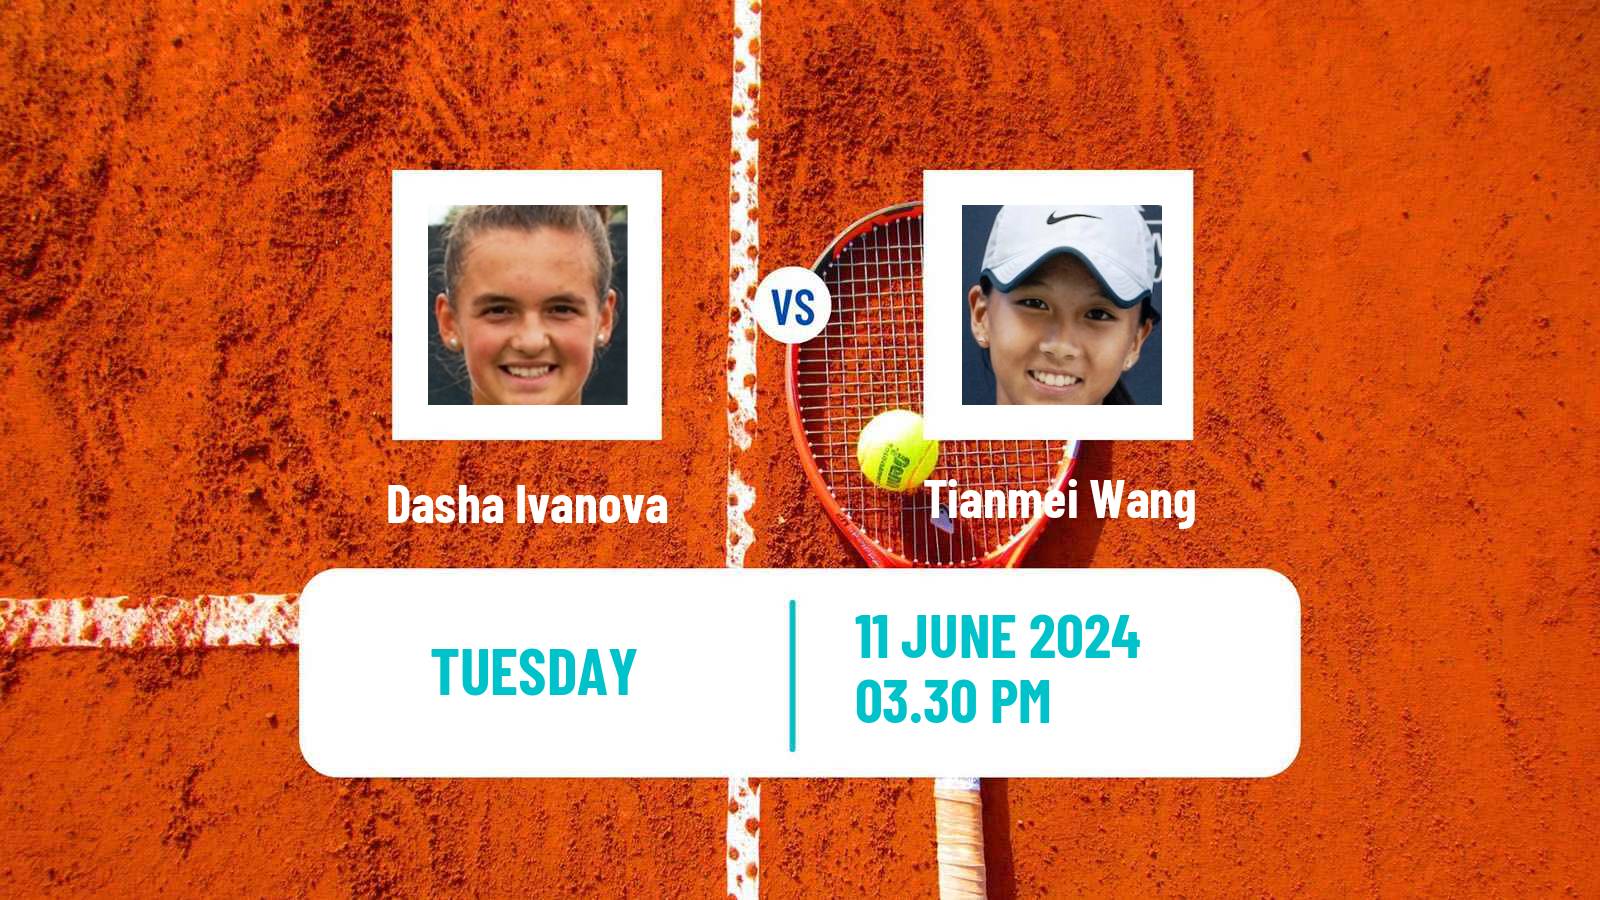 Tennis ITF W15 San Diego Ca 3 Women Dasha Ivanova - Tianmei Wang